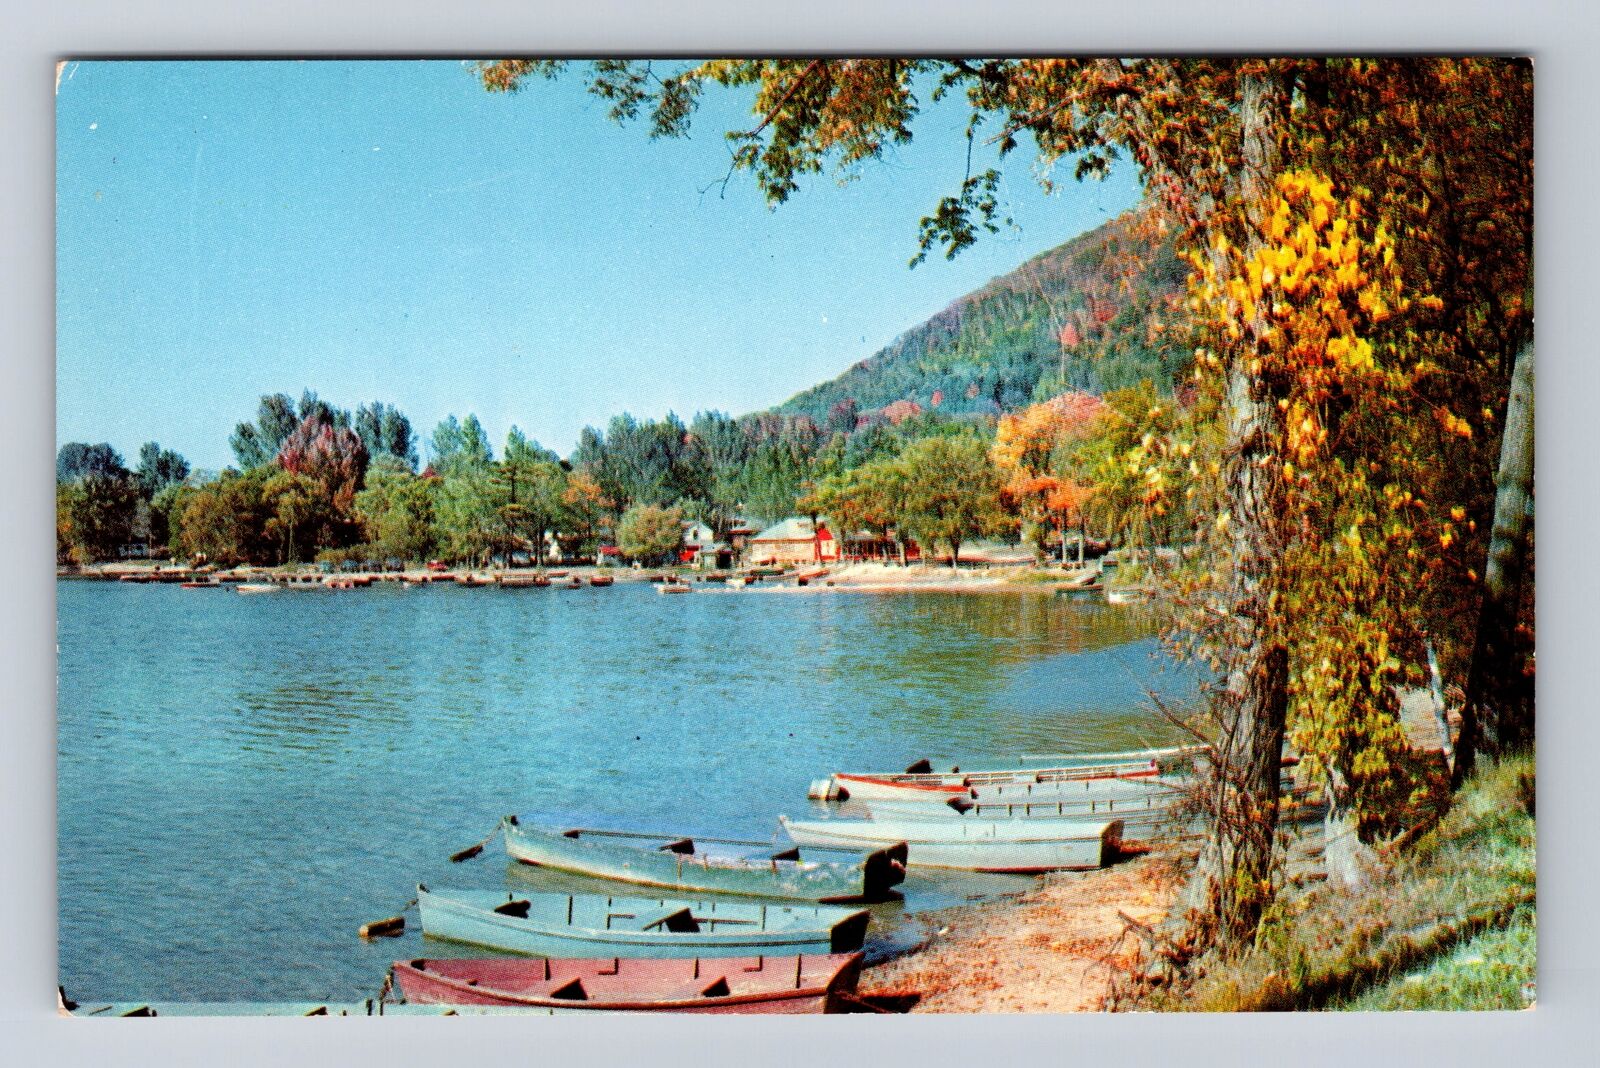 Twin Lakes CT-Connecticut, Autumn along the Lake, Antique Vintage Postcard